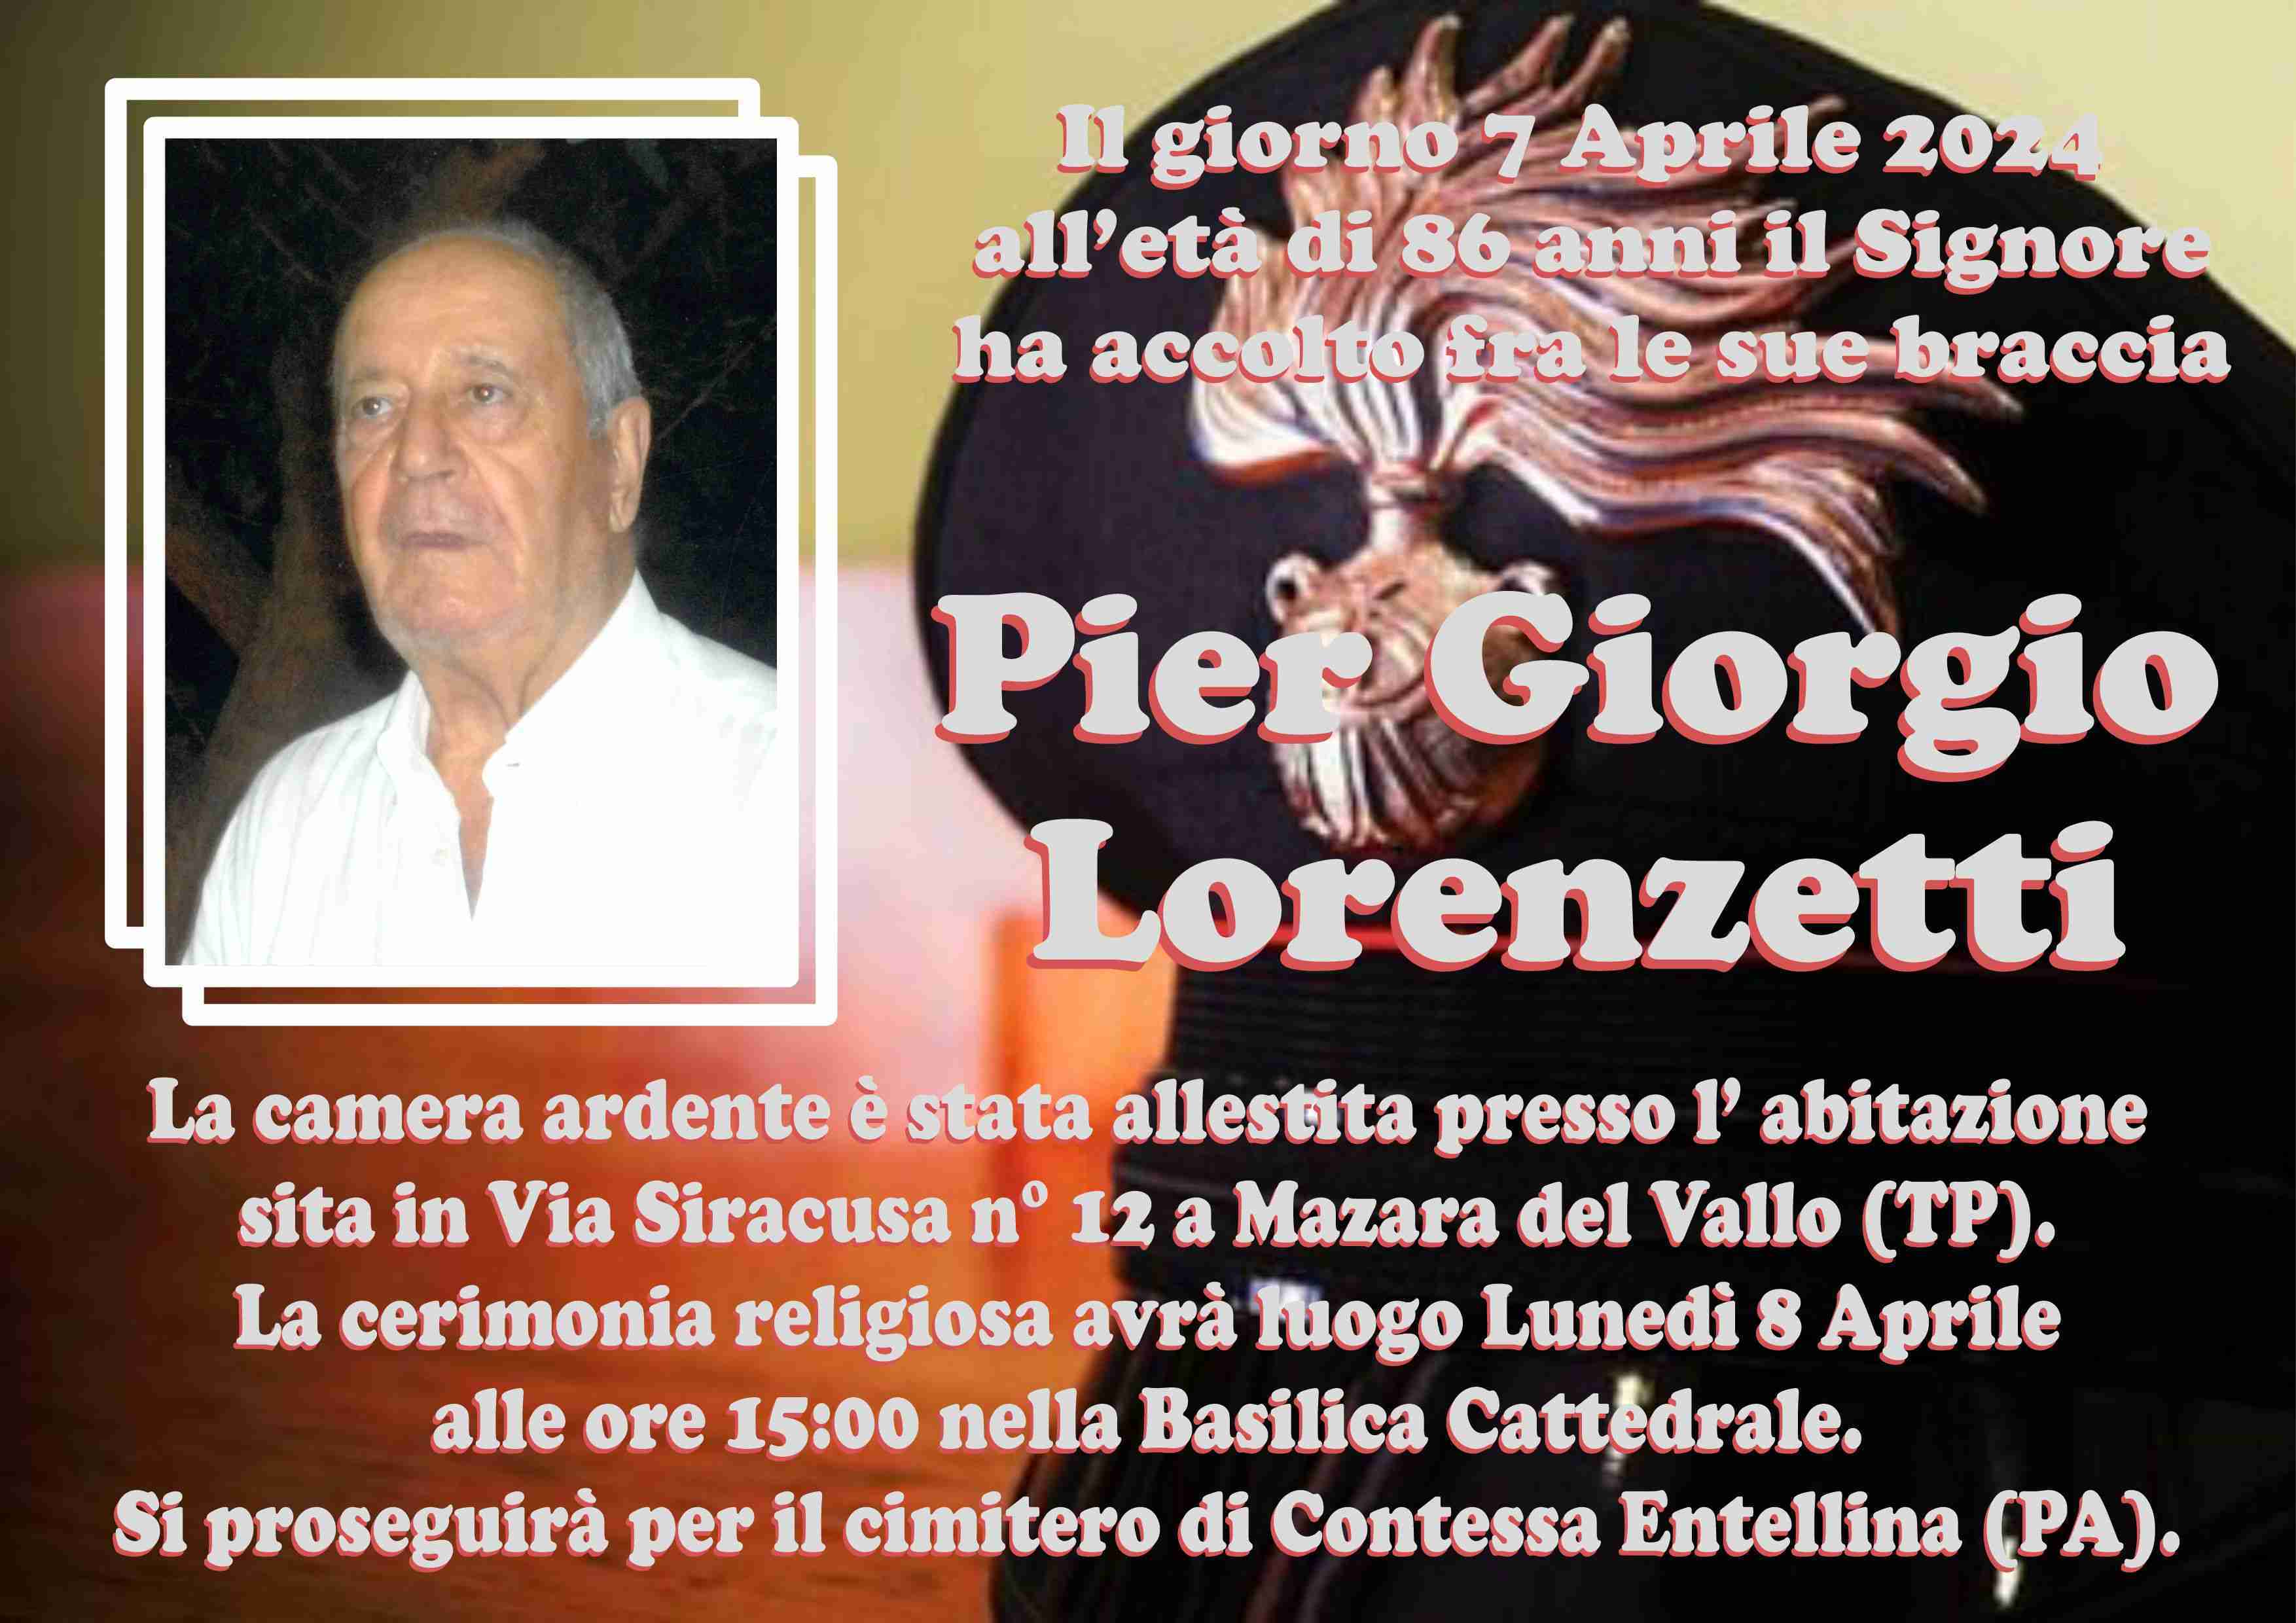 Pier Giorgio Lorenzetti